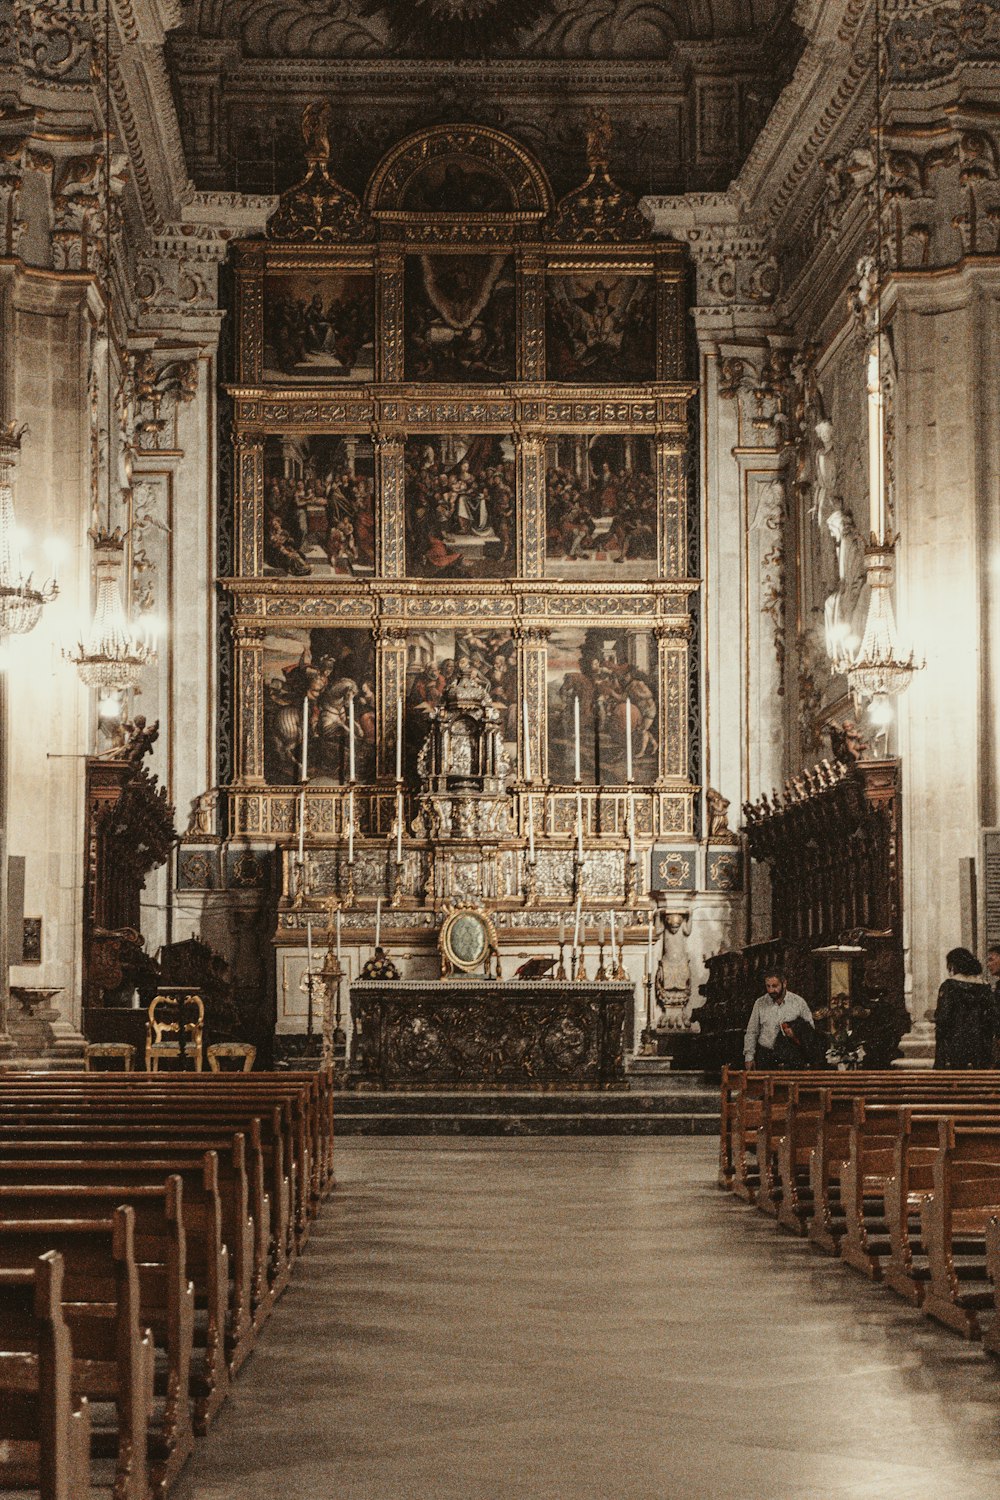 o interior de uma igreja com bancos e pinturas na parede